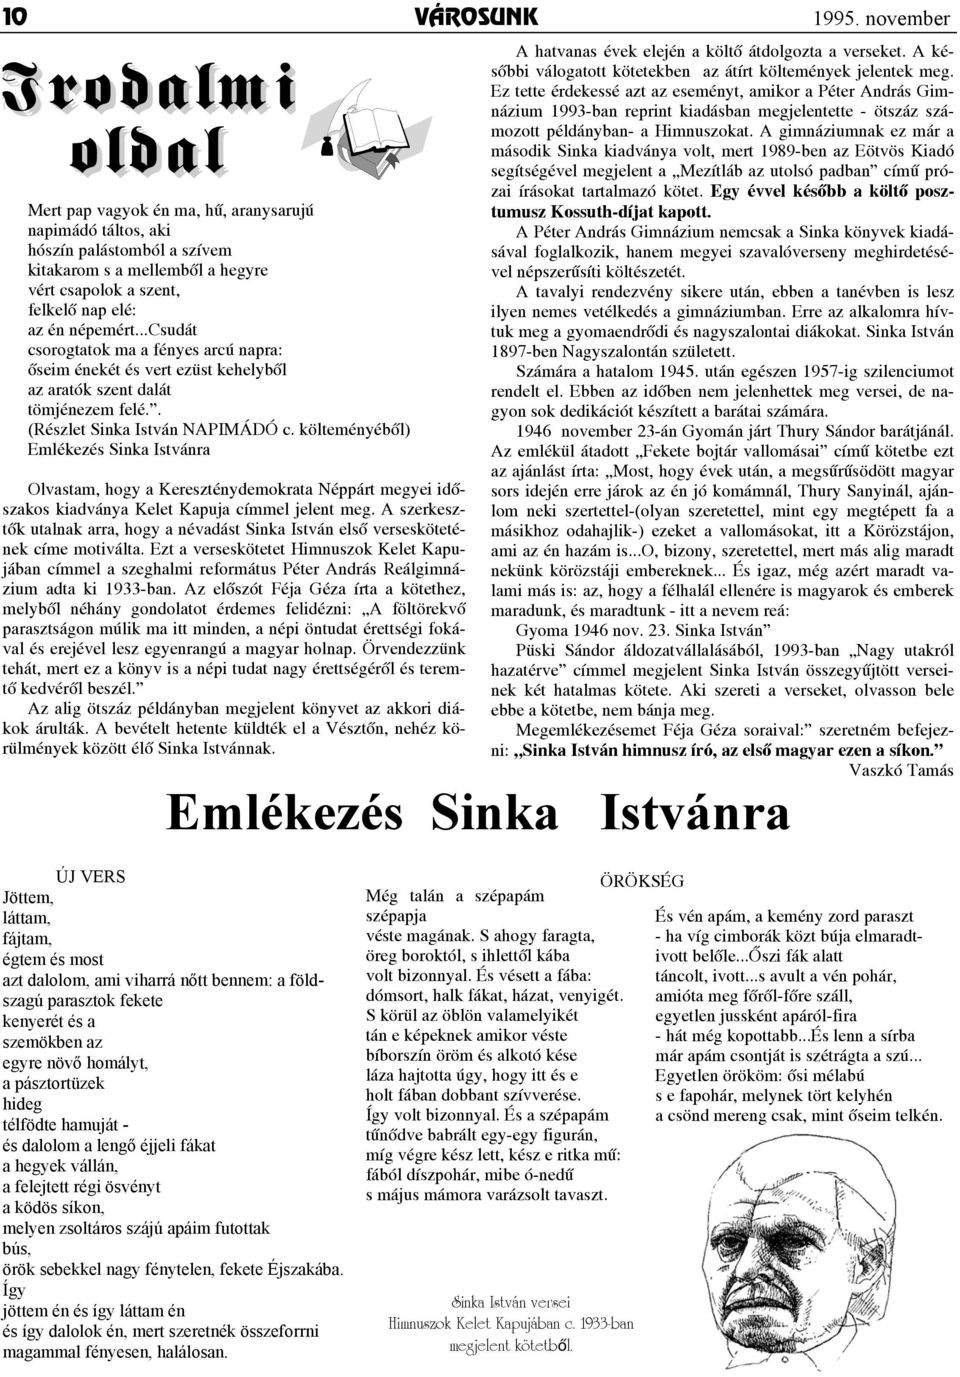 A gimnáziumnak ez már a második Sinka kiadványa volt, mert 1989-ben az Eötvös Kiadó segítségével megjelent a Mezítláb az utolsó padban címû prózai írásokat tartalmazó kötet.